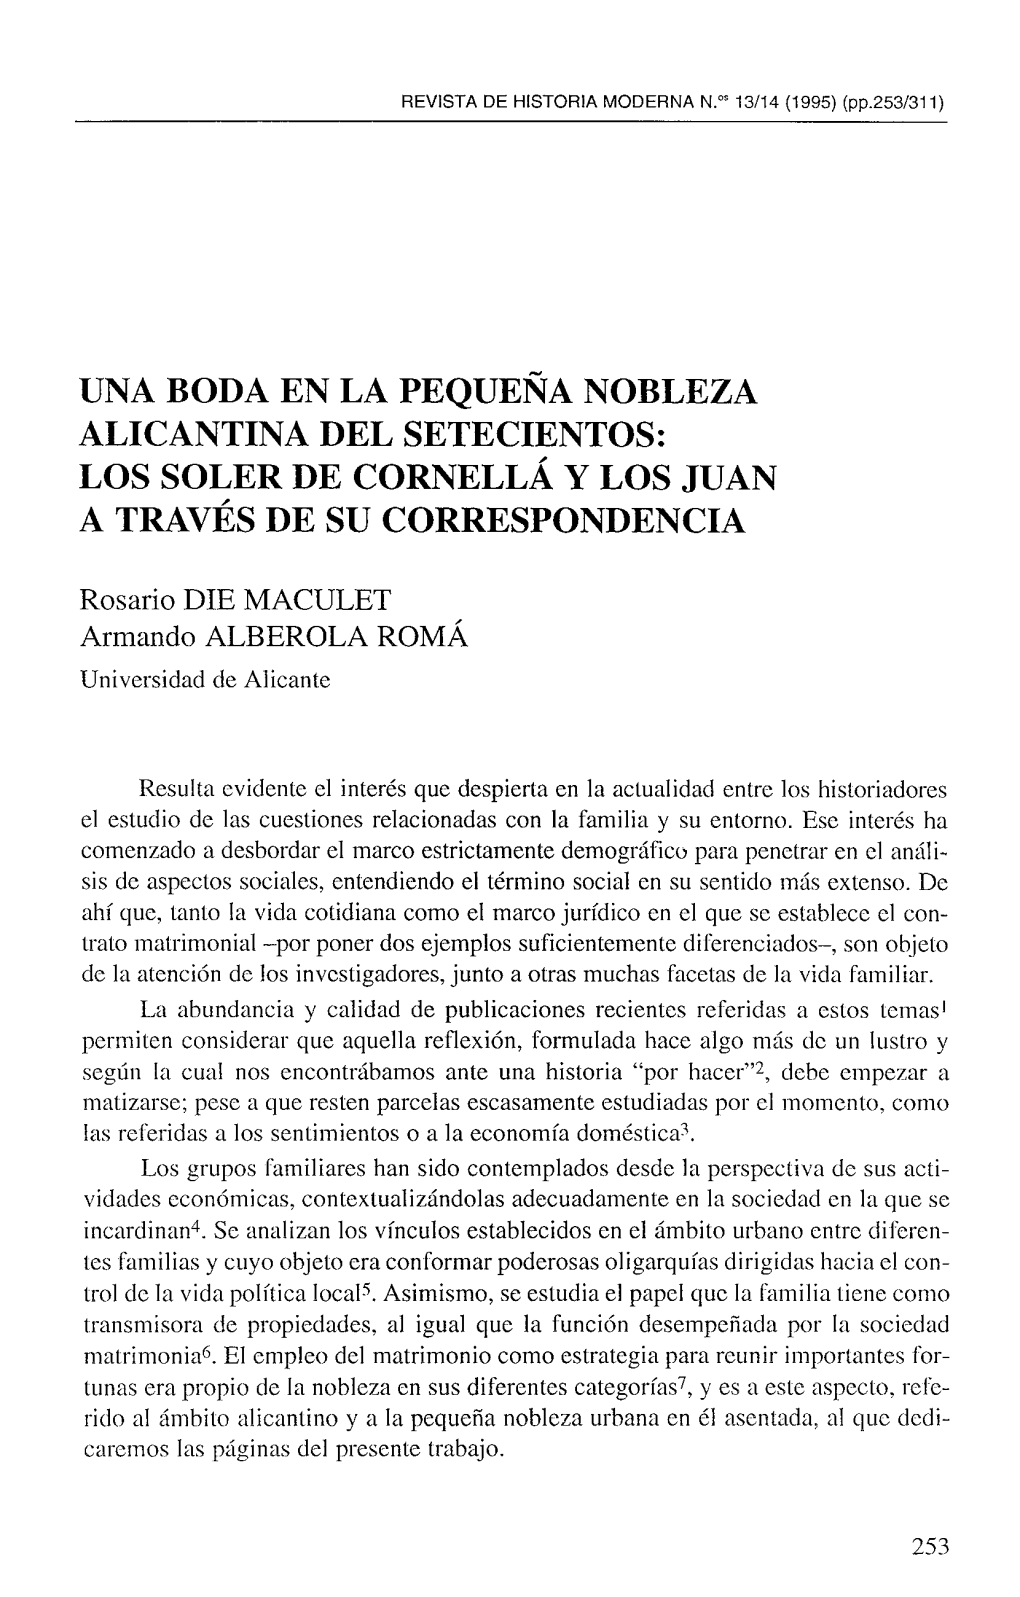 Una Boda En La Pequeña Nobleza Alicantina Del Setecientos: Los Soler De Cornellá Y Los Juan a Través De Su Correspondencia